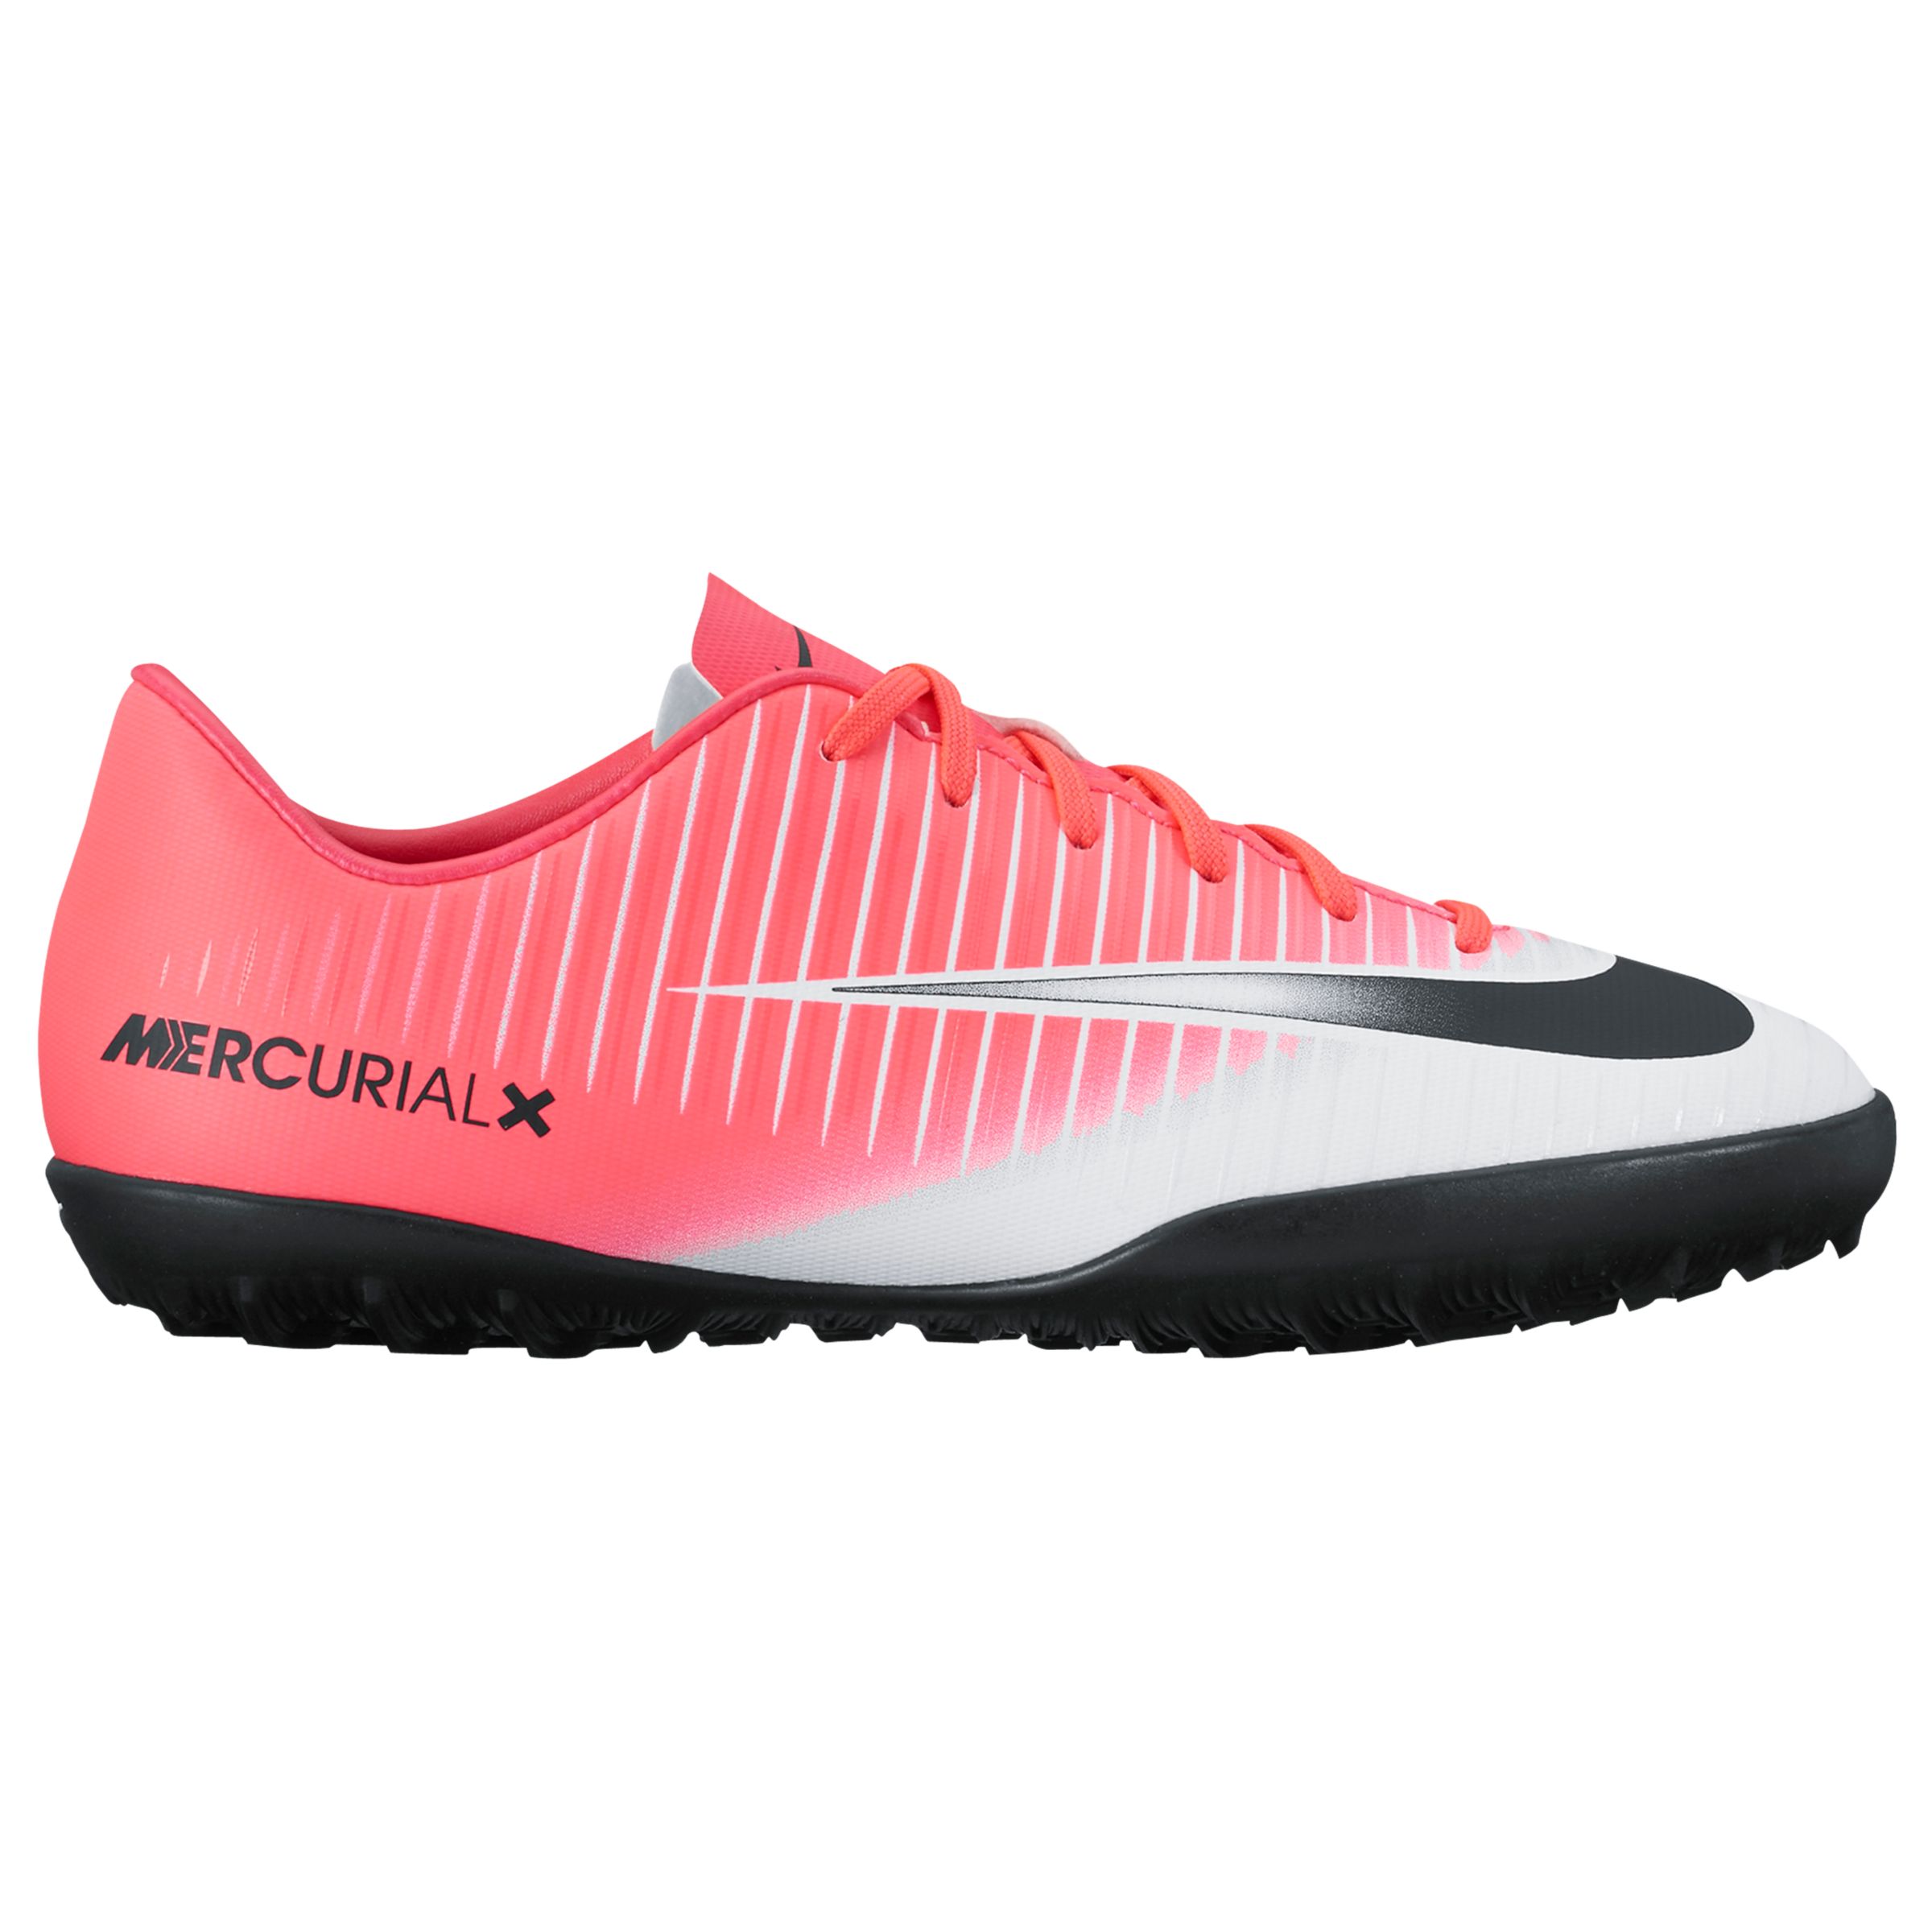 Nike Children's Mercurial Vapor Turf Football Boots, Pink/White, 10 Jnr